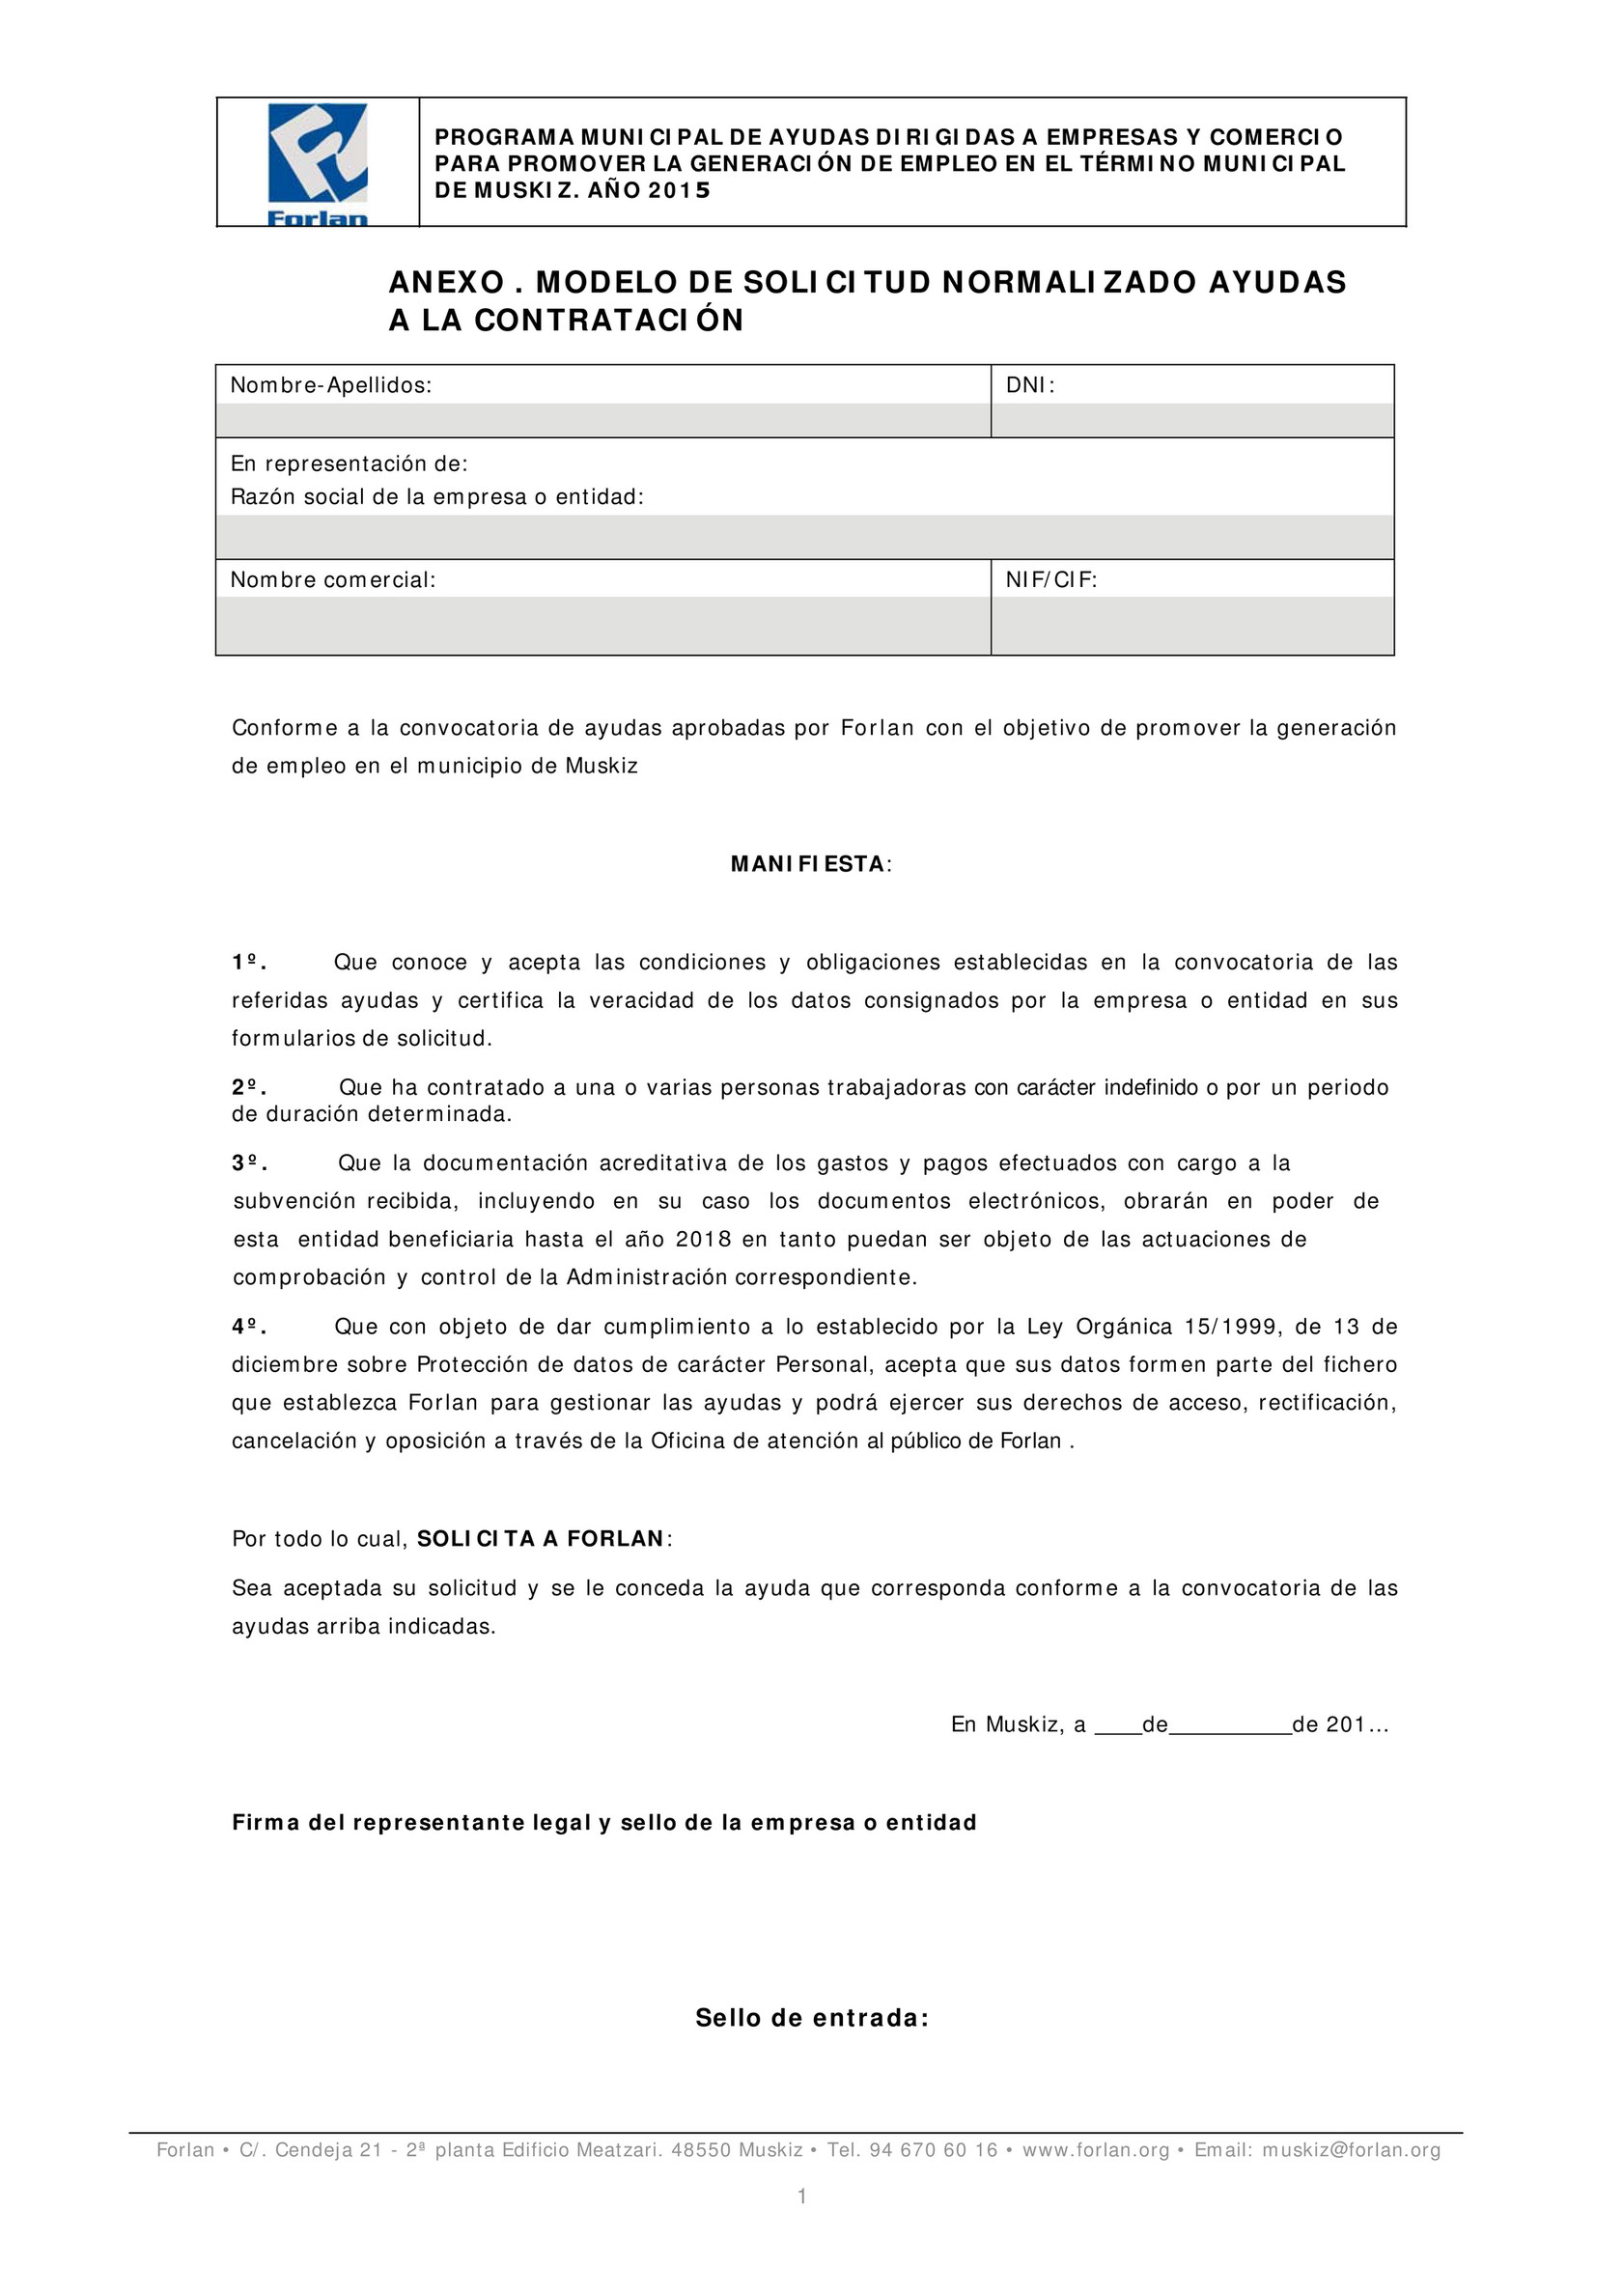 Forlan - Plan dinamización Muskiz Modelo de Solicitud de Ayuda a Empresas y  Comercio para contratación - 2015 - Página 1 - Created with 